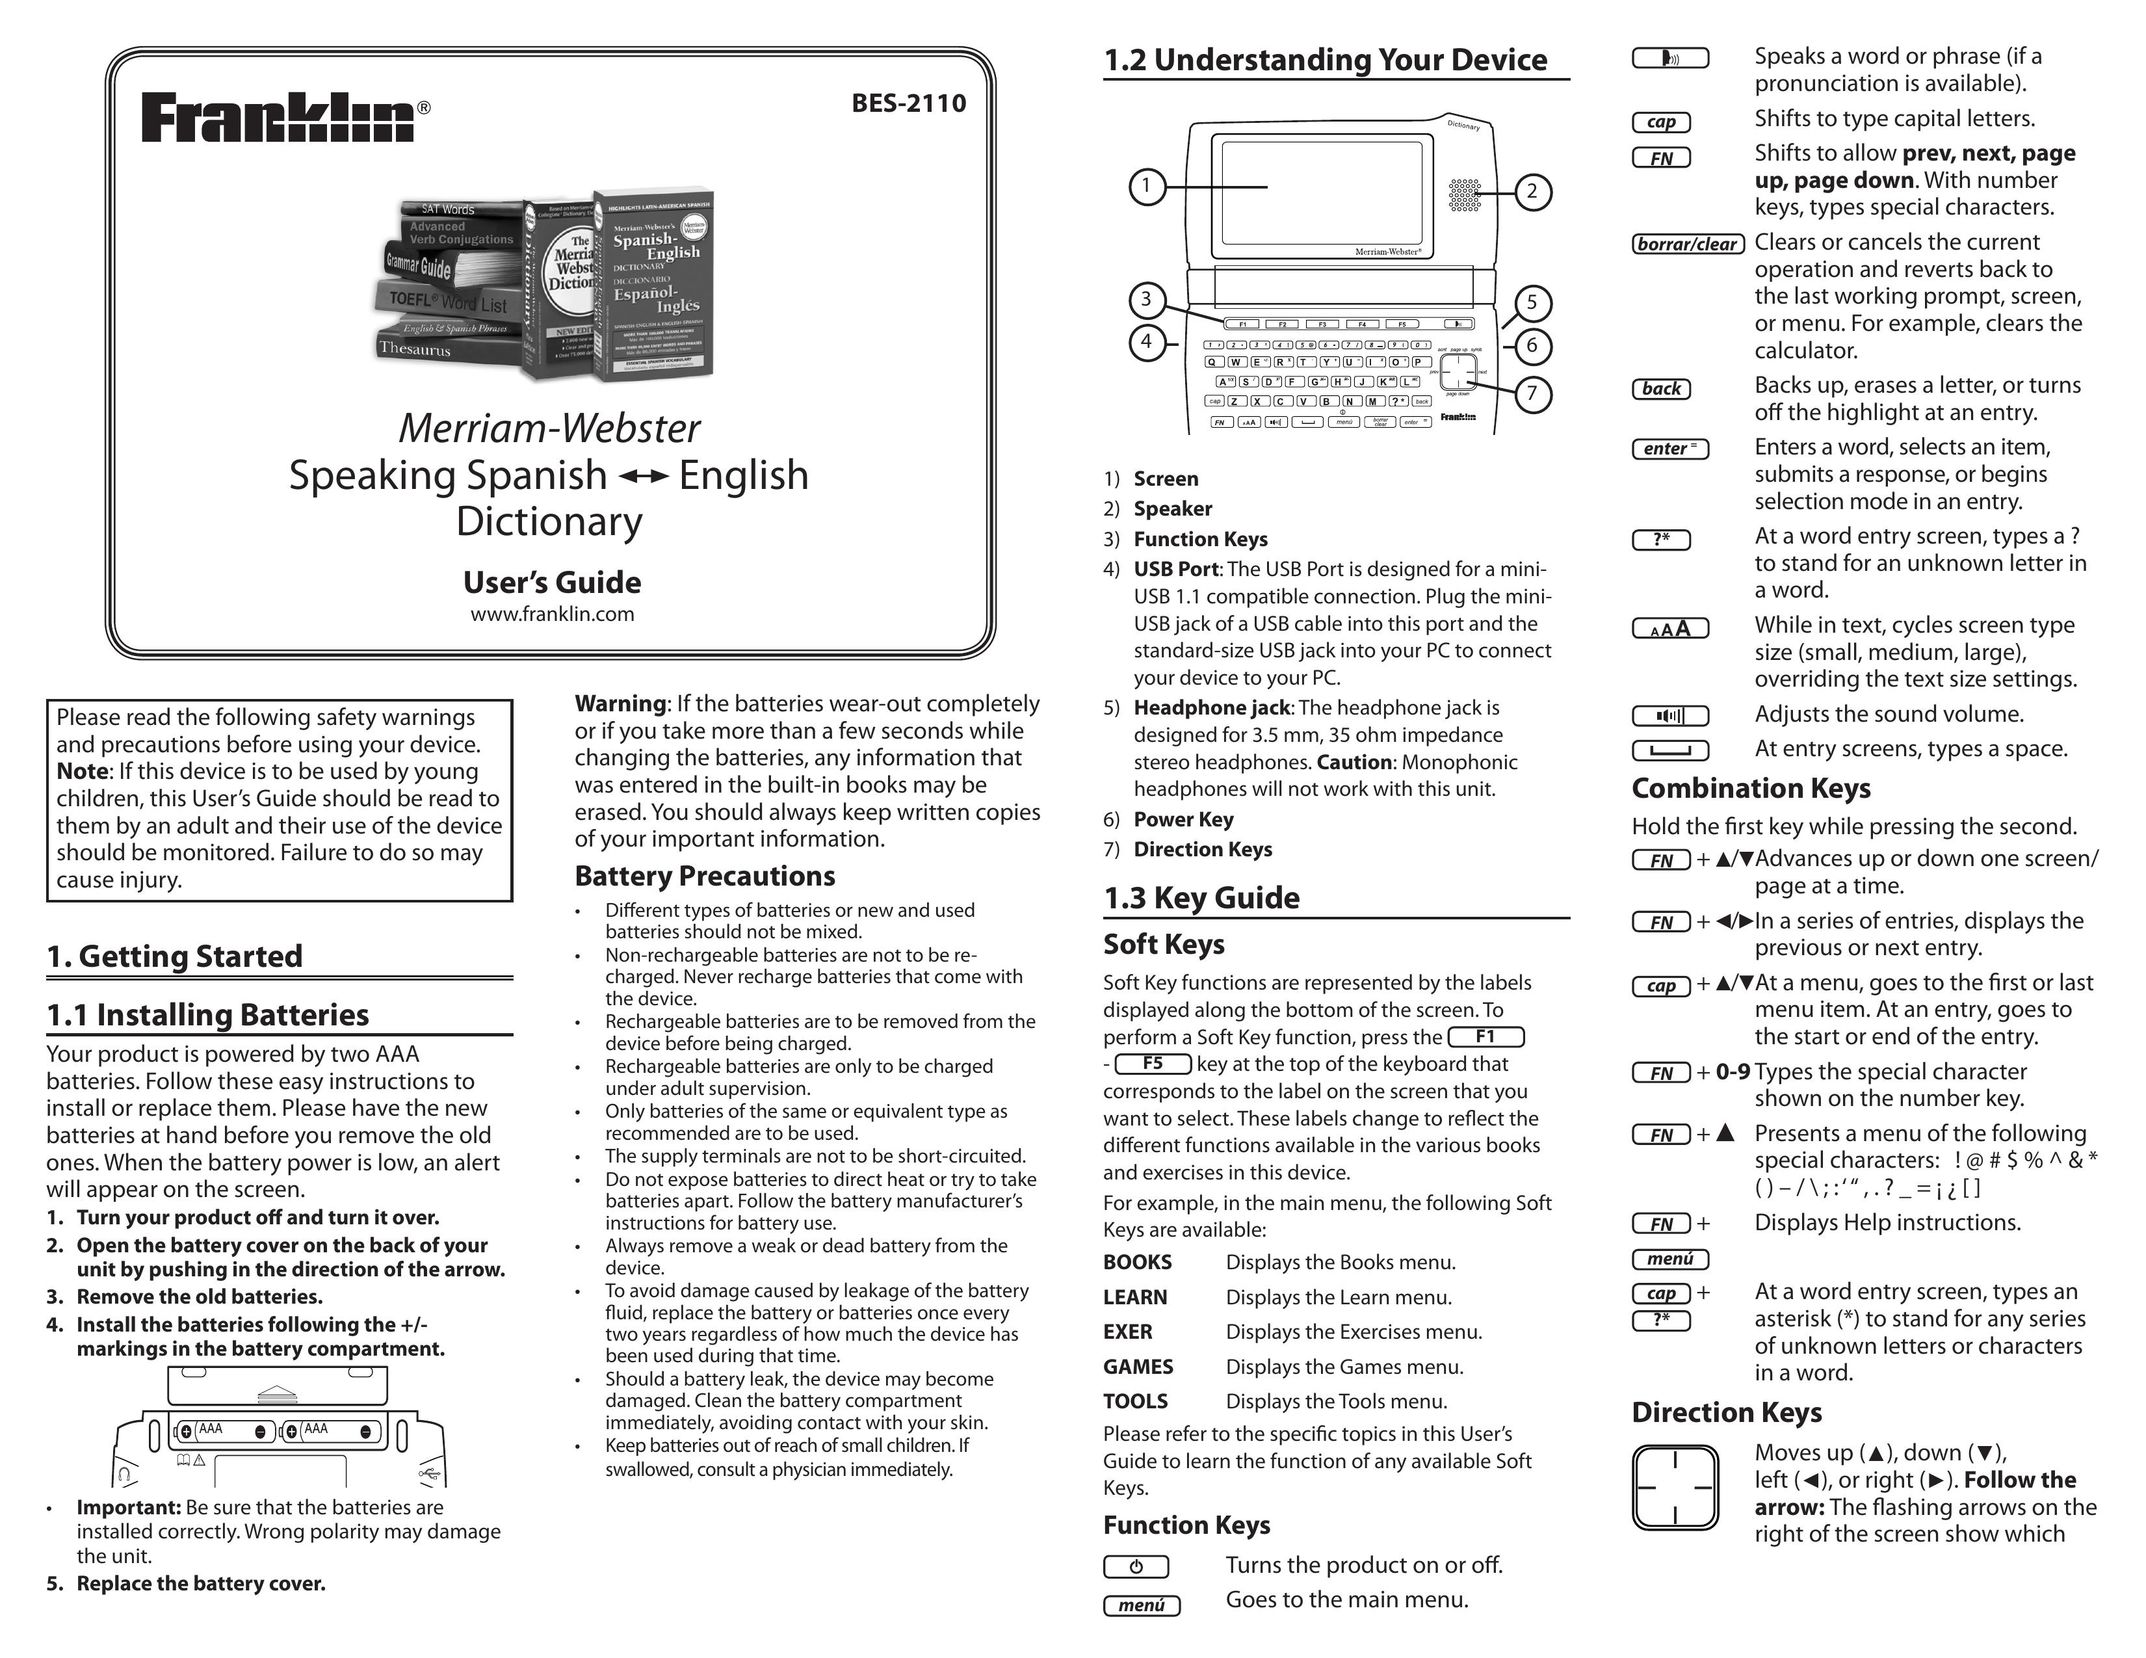 Franklin BES-2110 Handheld Game System User Manual